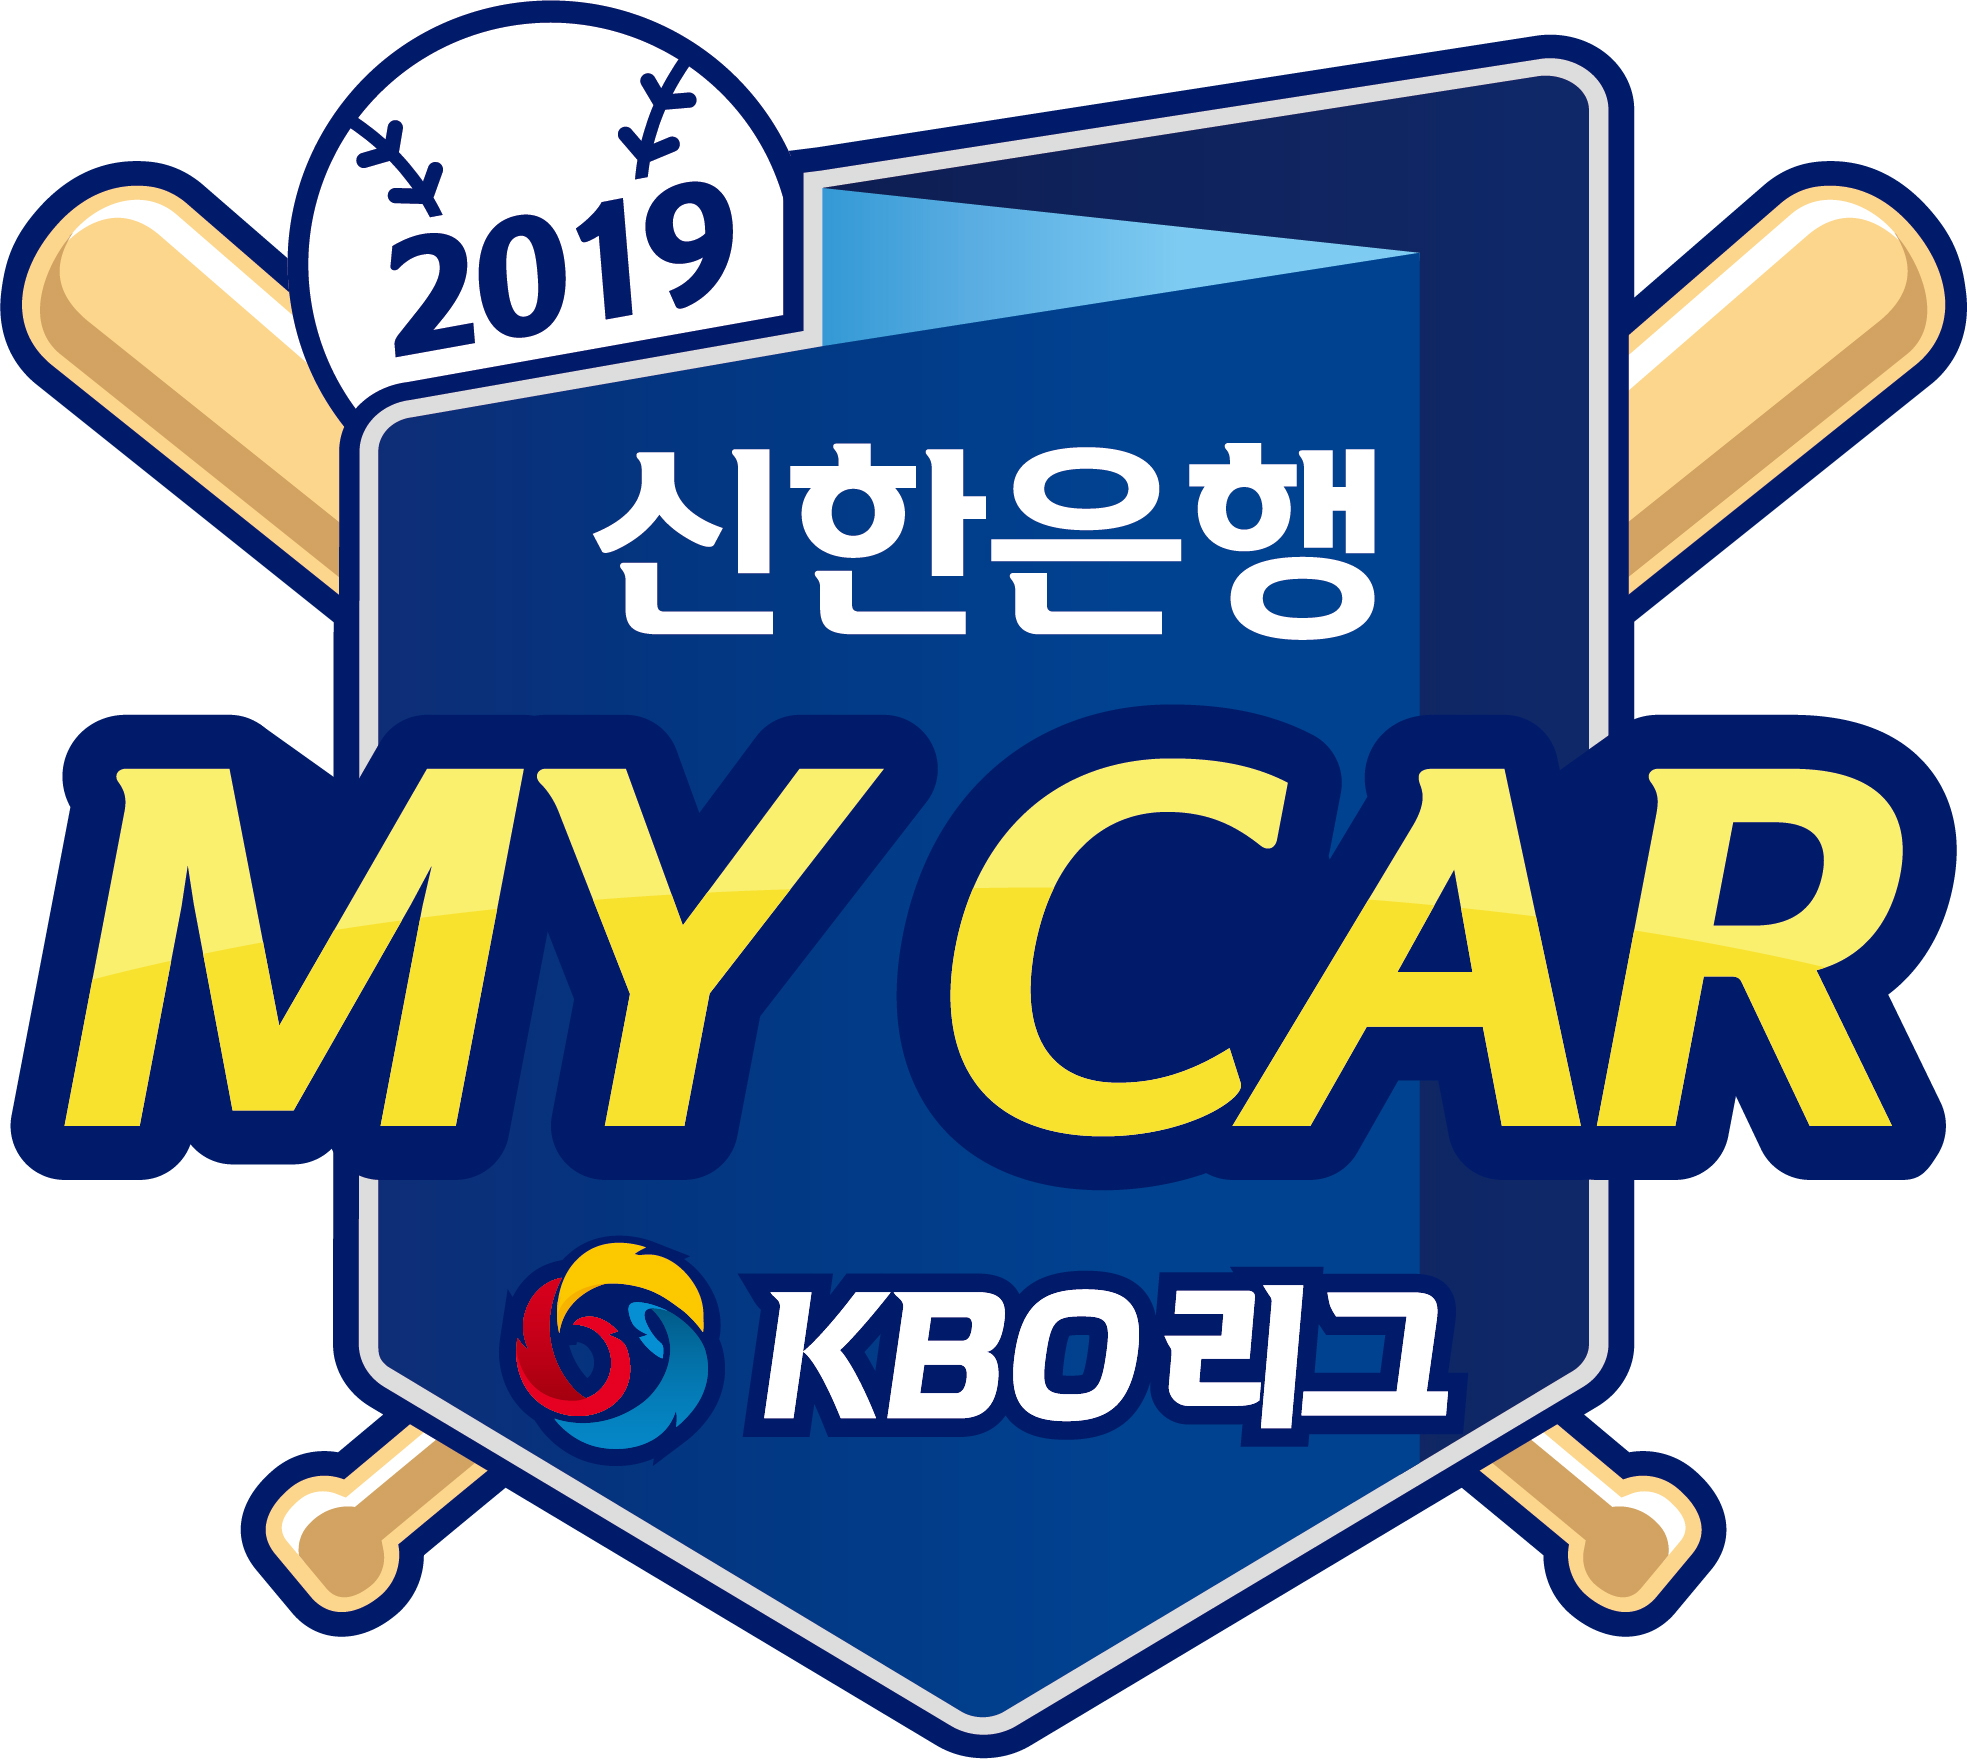 2019 신한은행 MY CAR KBO 리그 타이틀 엠블럼 이미지_기본형.jpg